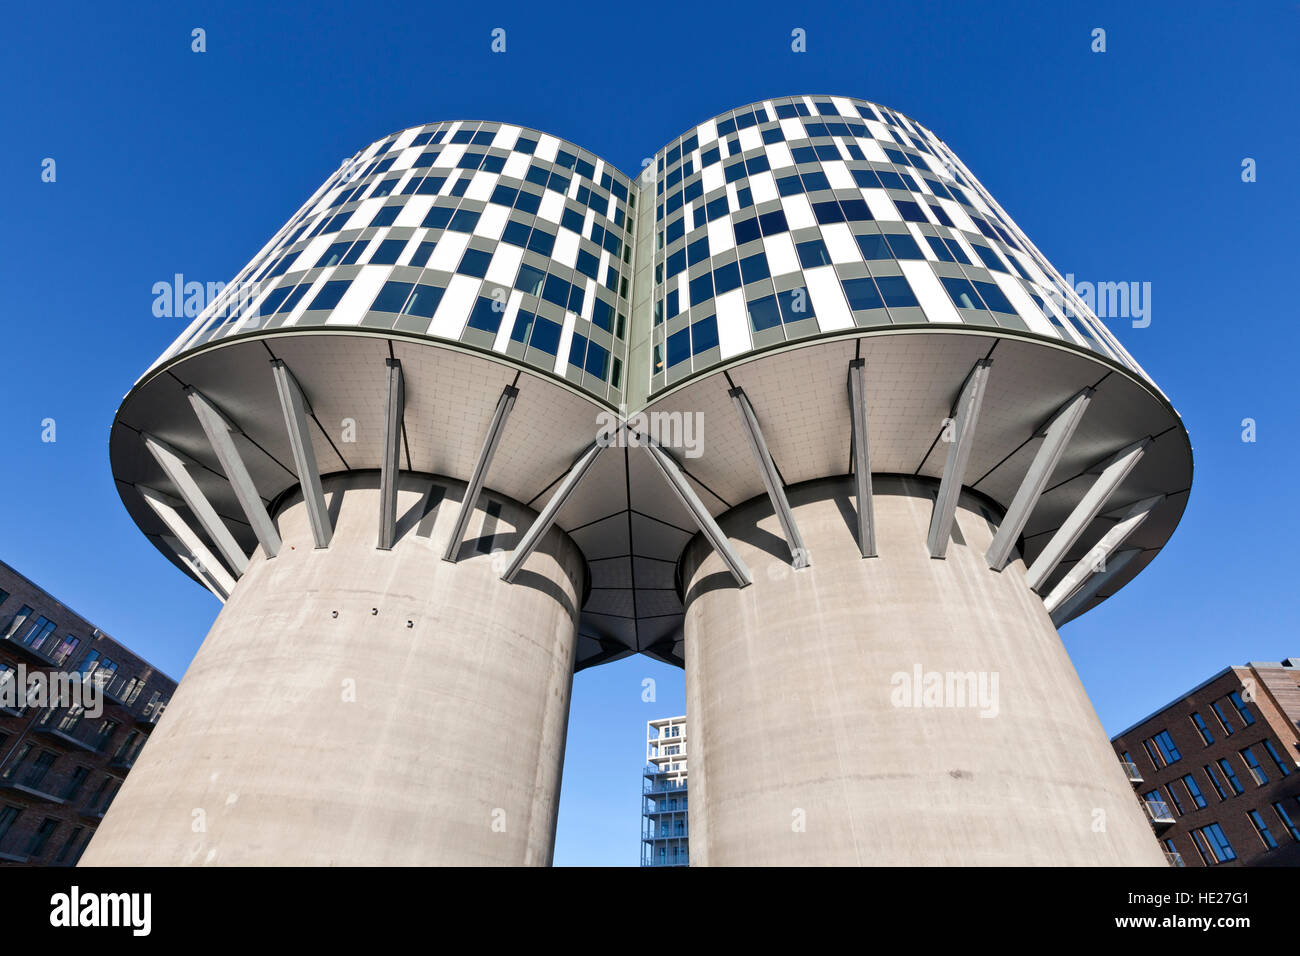 Les deux anciens silos à ciment Portland d'Aalborg dans Copenhague Nordhavn maintenant convertis en immeubles de bureaux modernes, le Portland Towers Banque D'Images